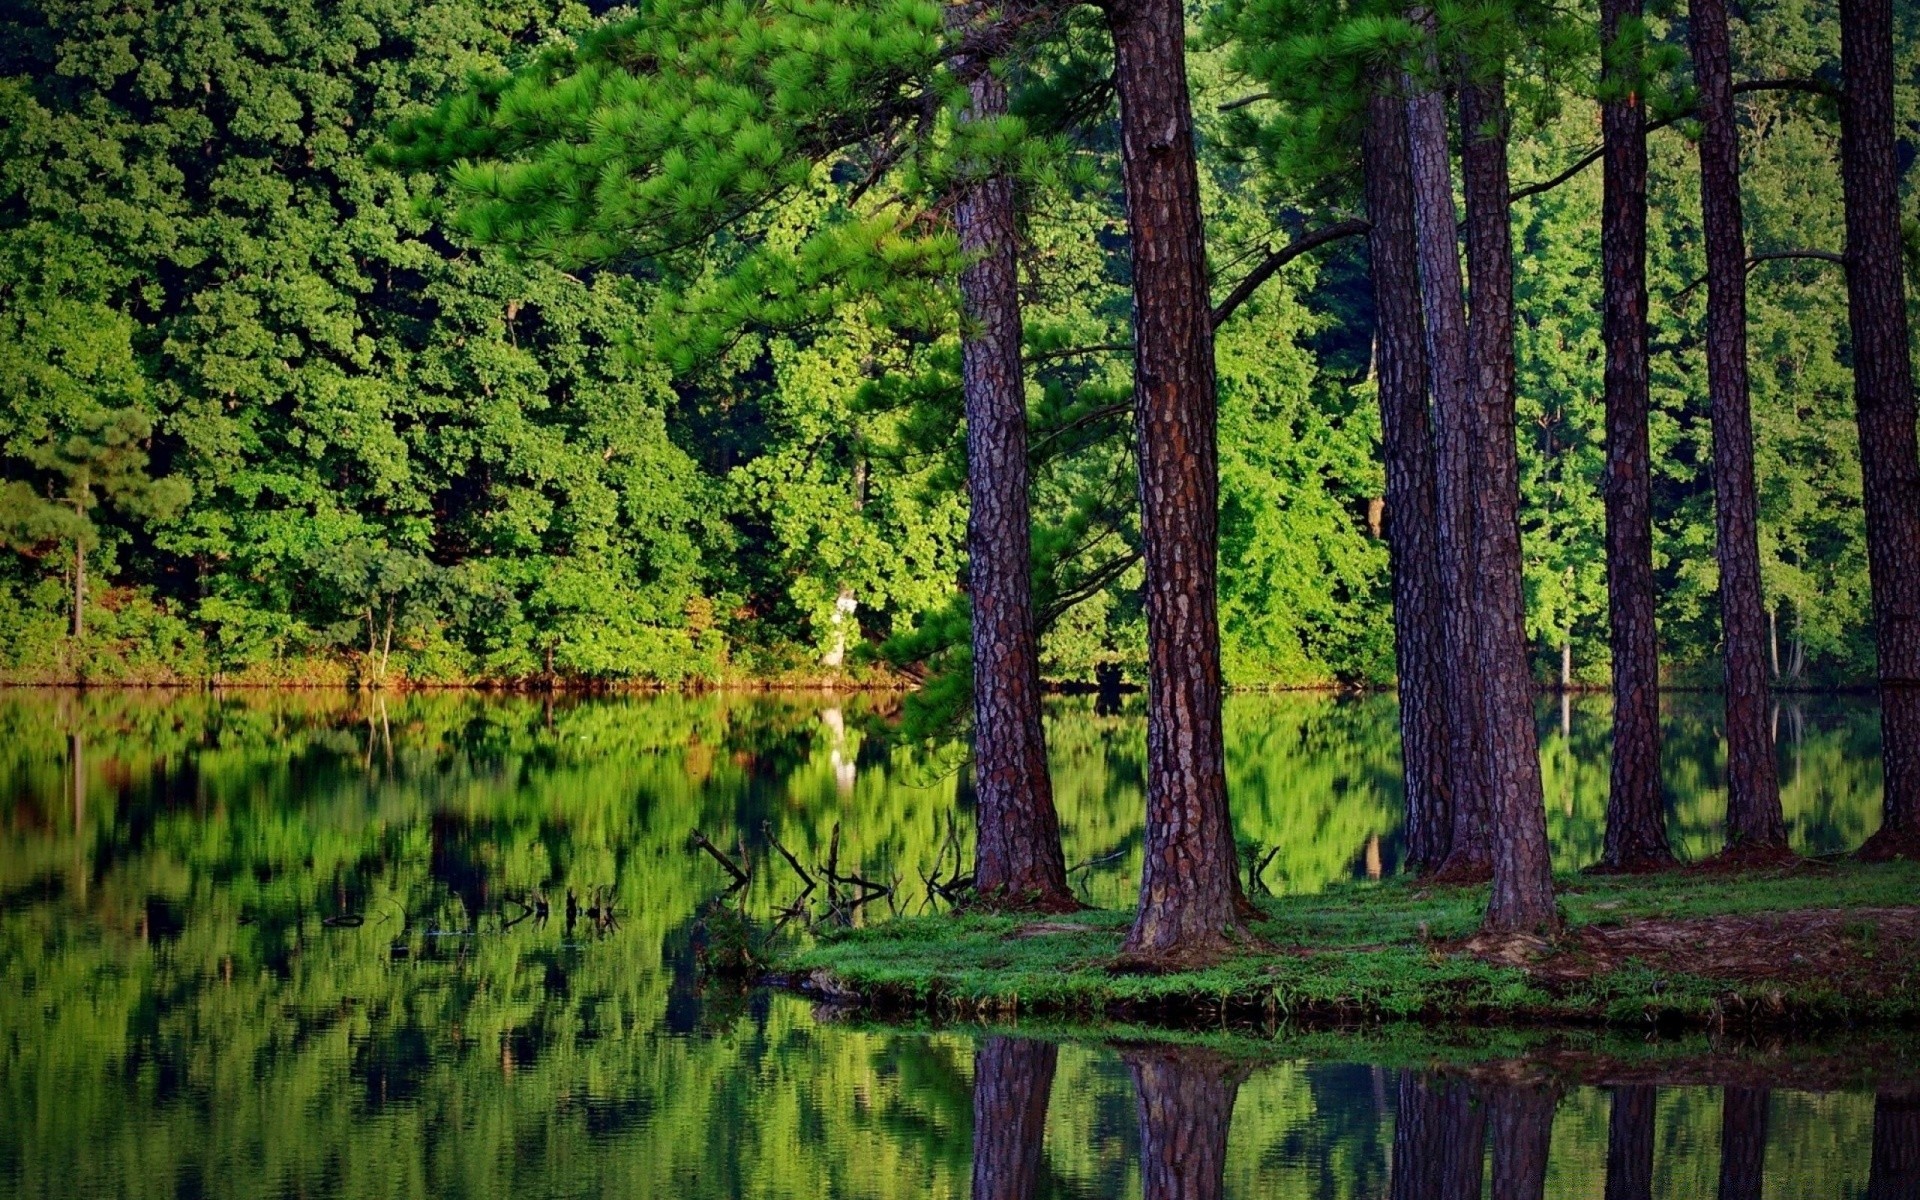 америка древесины дерево природа пейзаж на открытом воздухе хвойные живописный воды эвергрин лето лист среды сосна дневной свет рассвет трава парк путешествия хорошую погоду